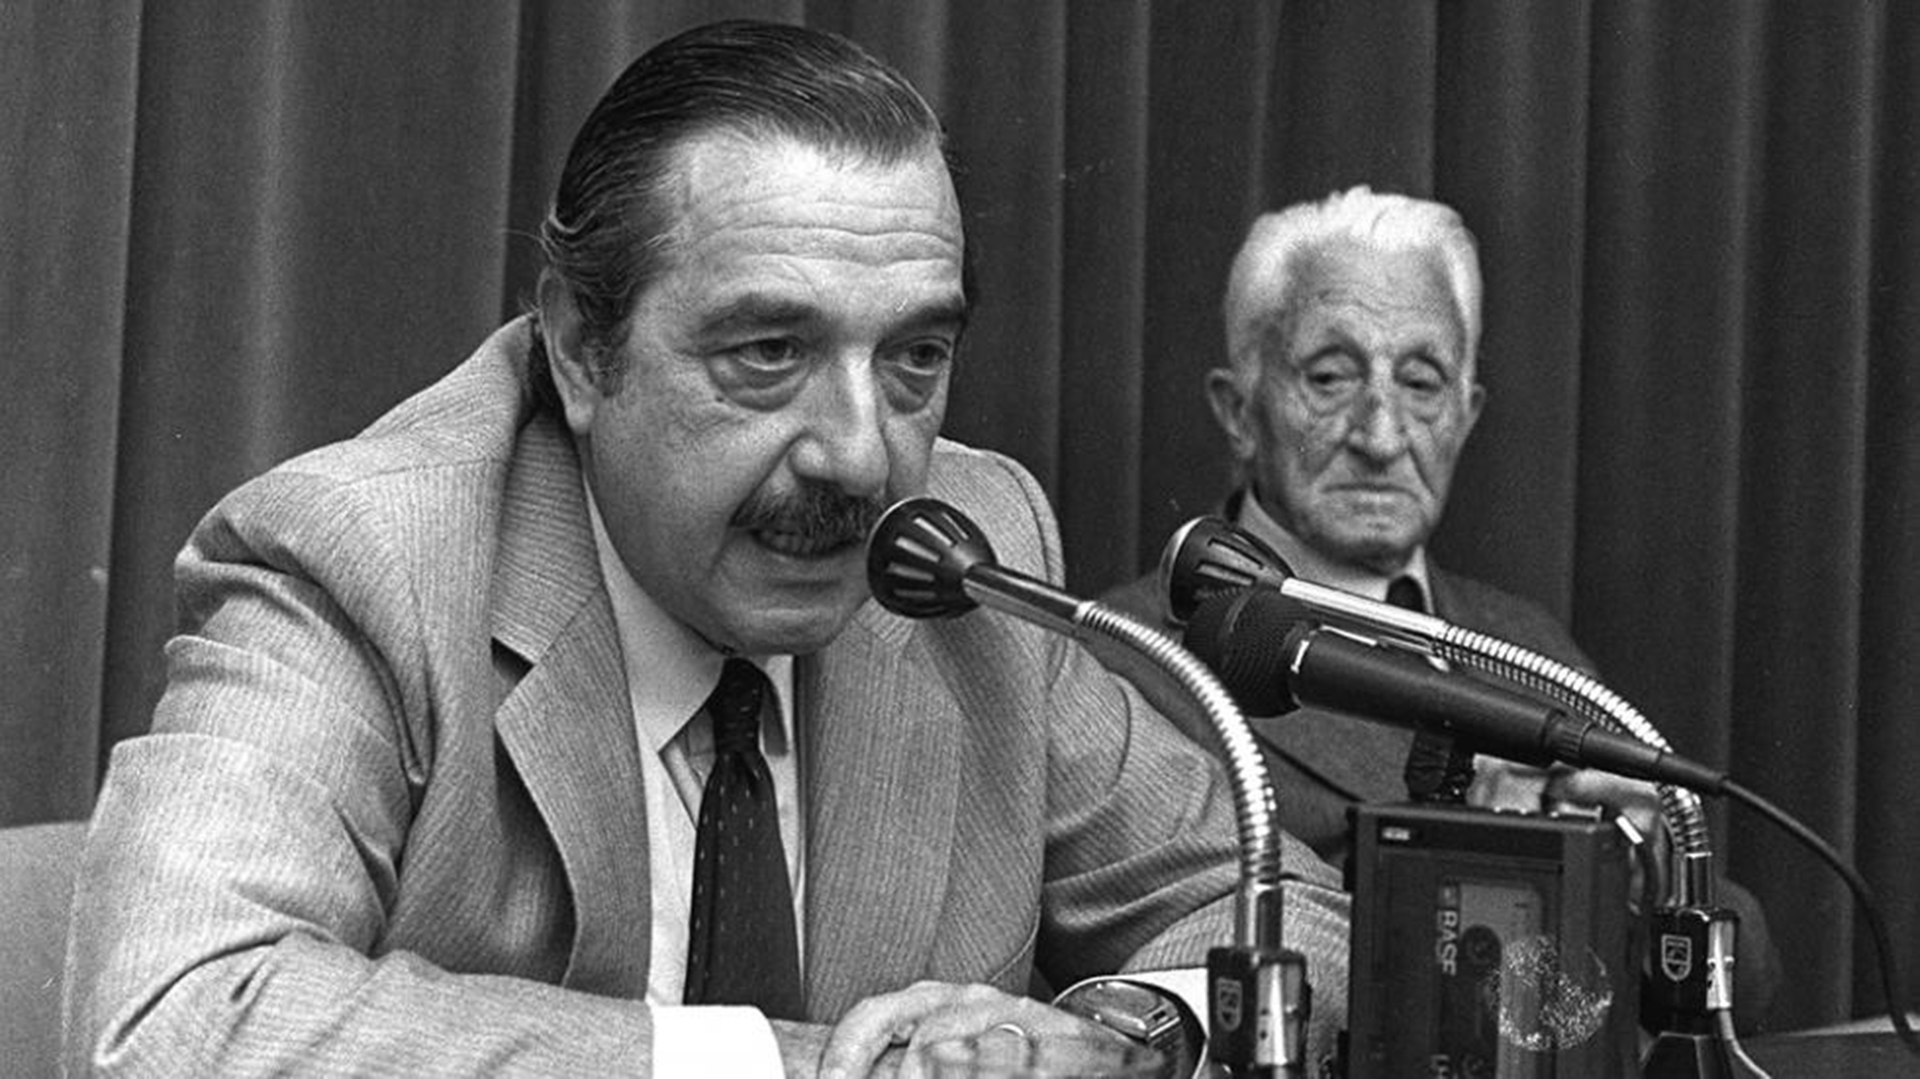 Raúl Alfonsín propuso, cuando la apertura democrática era un hecho, que Illia fuese reconocido como un símbolo viviente de la democracia y la legitimidad